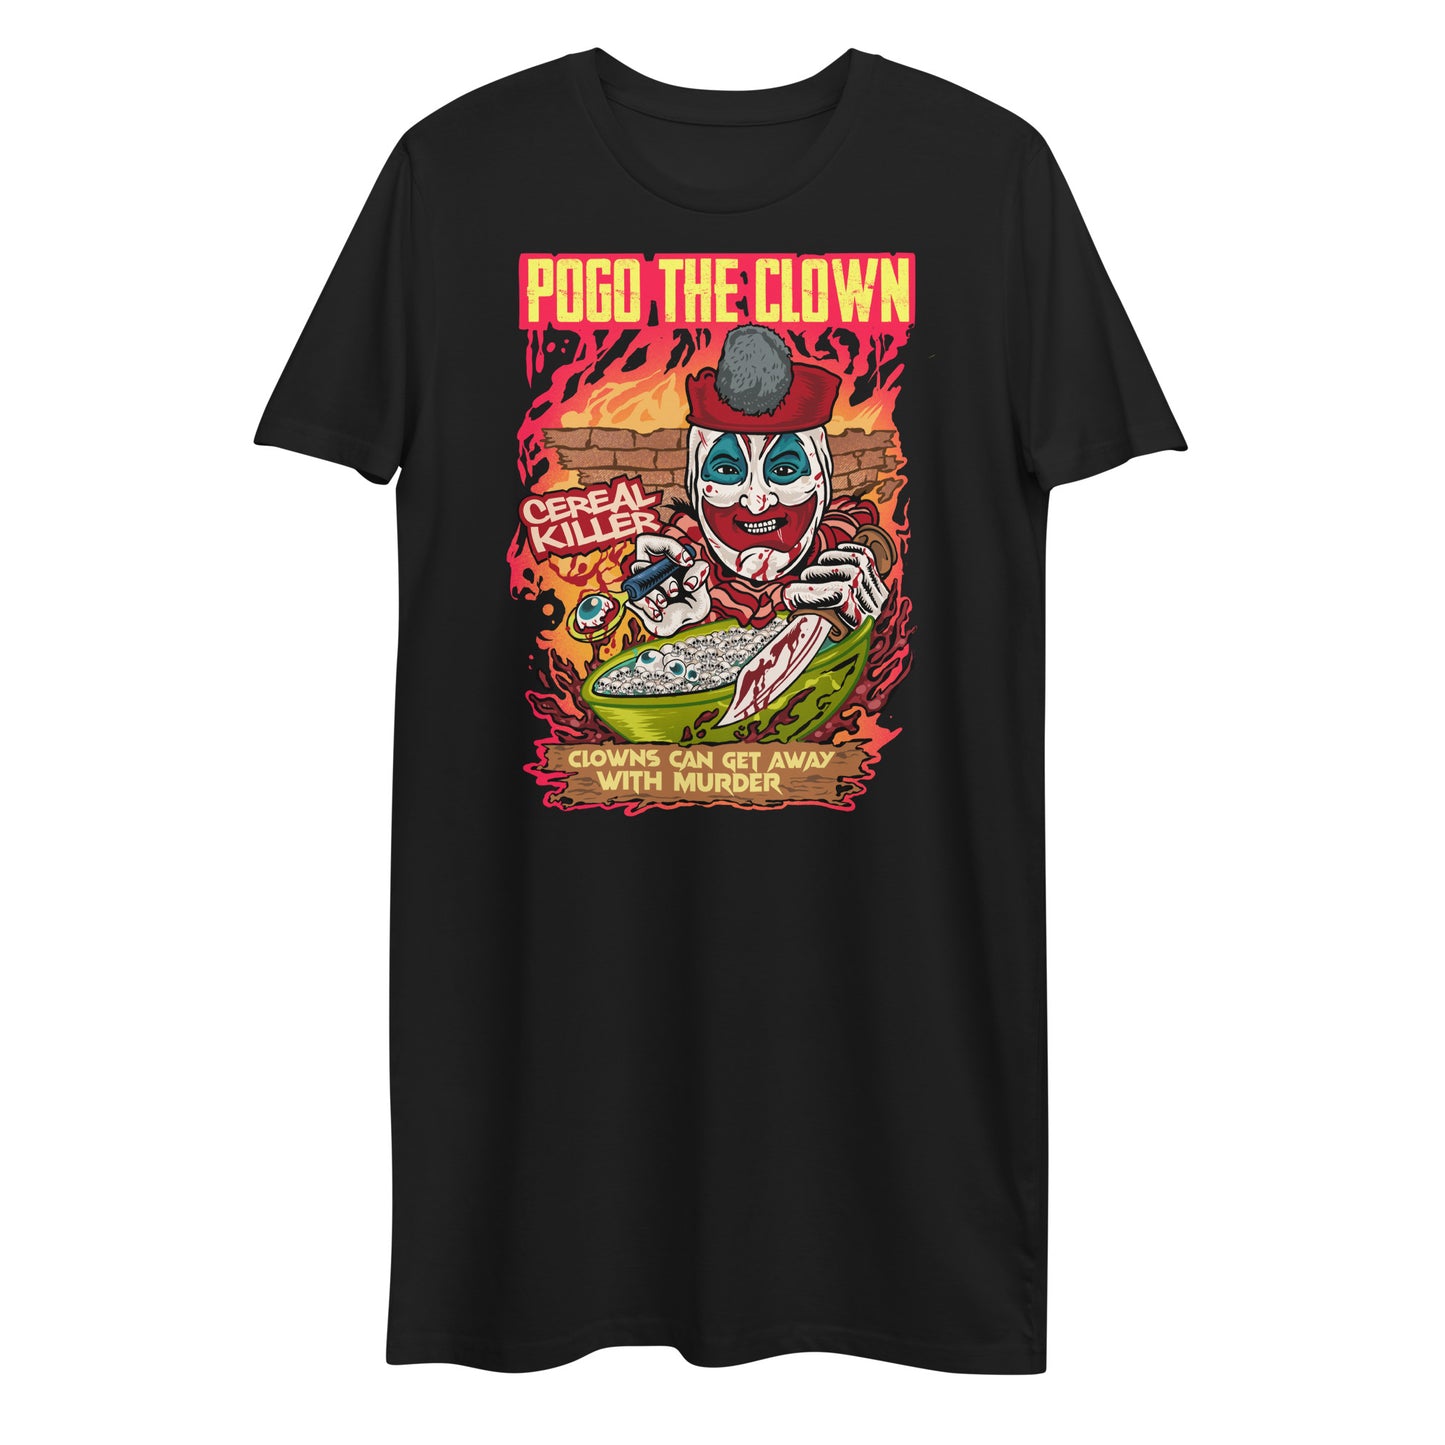 Pogo the clown t-shirt dress